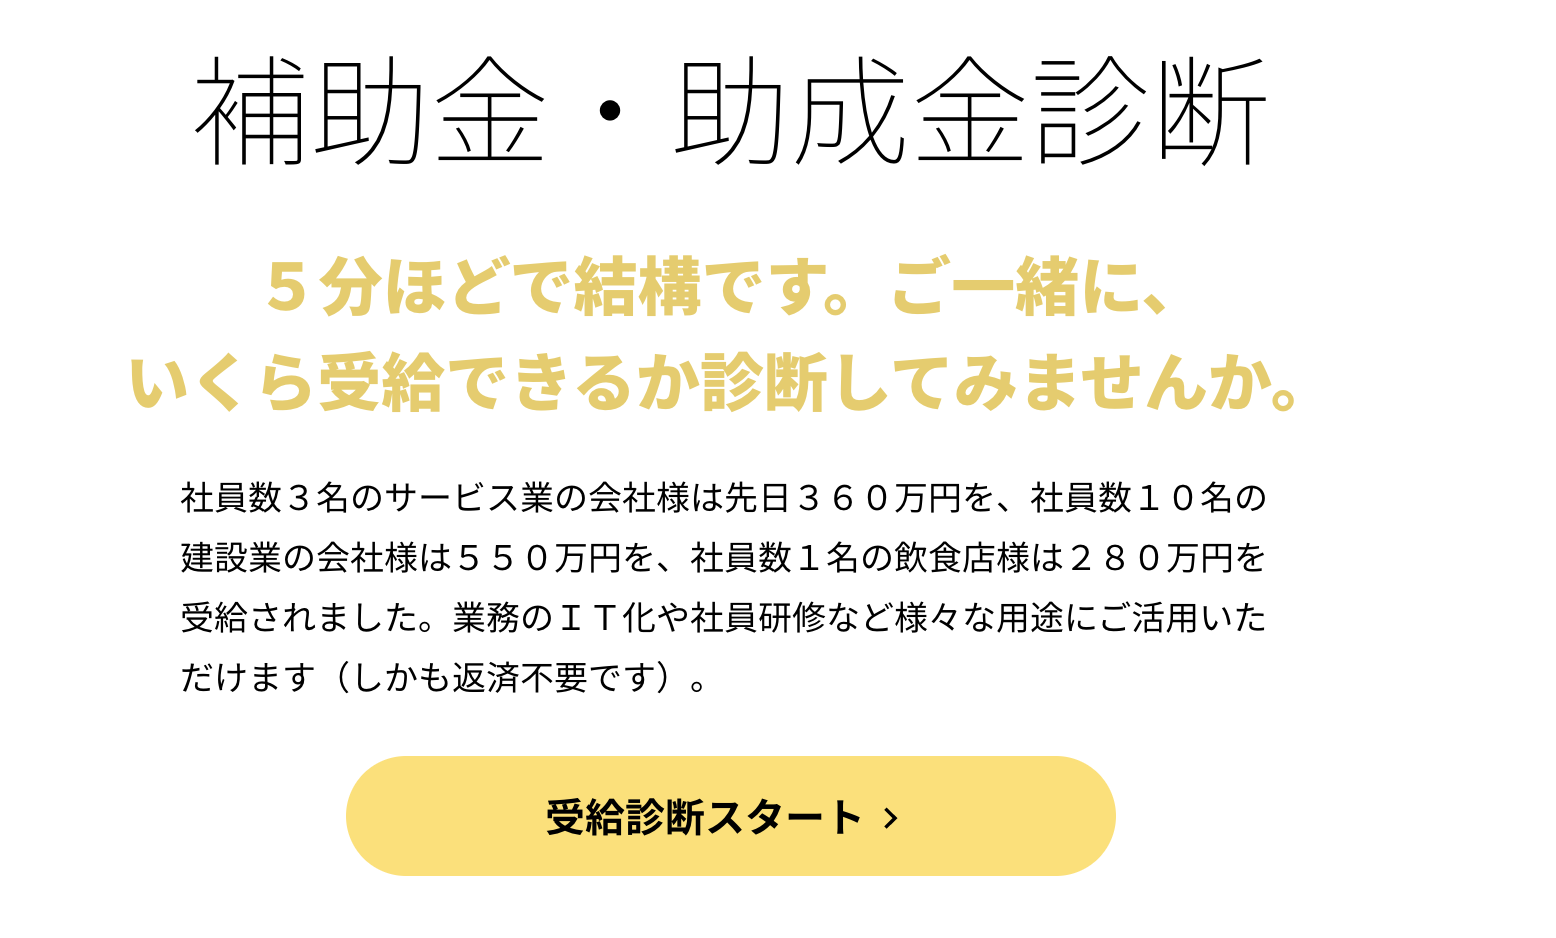 宇多田ヒカルさんの【Hikaru Utada Laughter in the Dark Tour 2018】 (完全生産限定スペシャルパッケージ) (DVD+Blu-ray) (特典なし)を購入しました